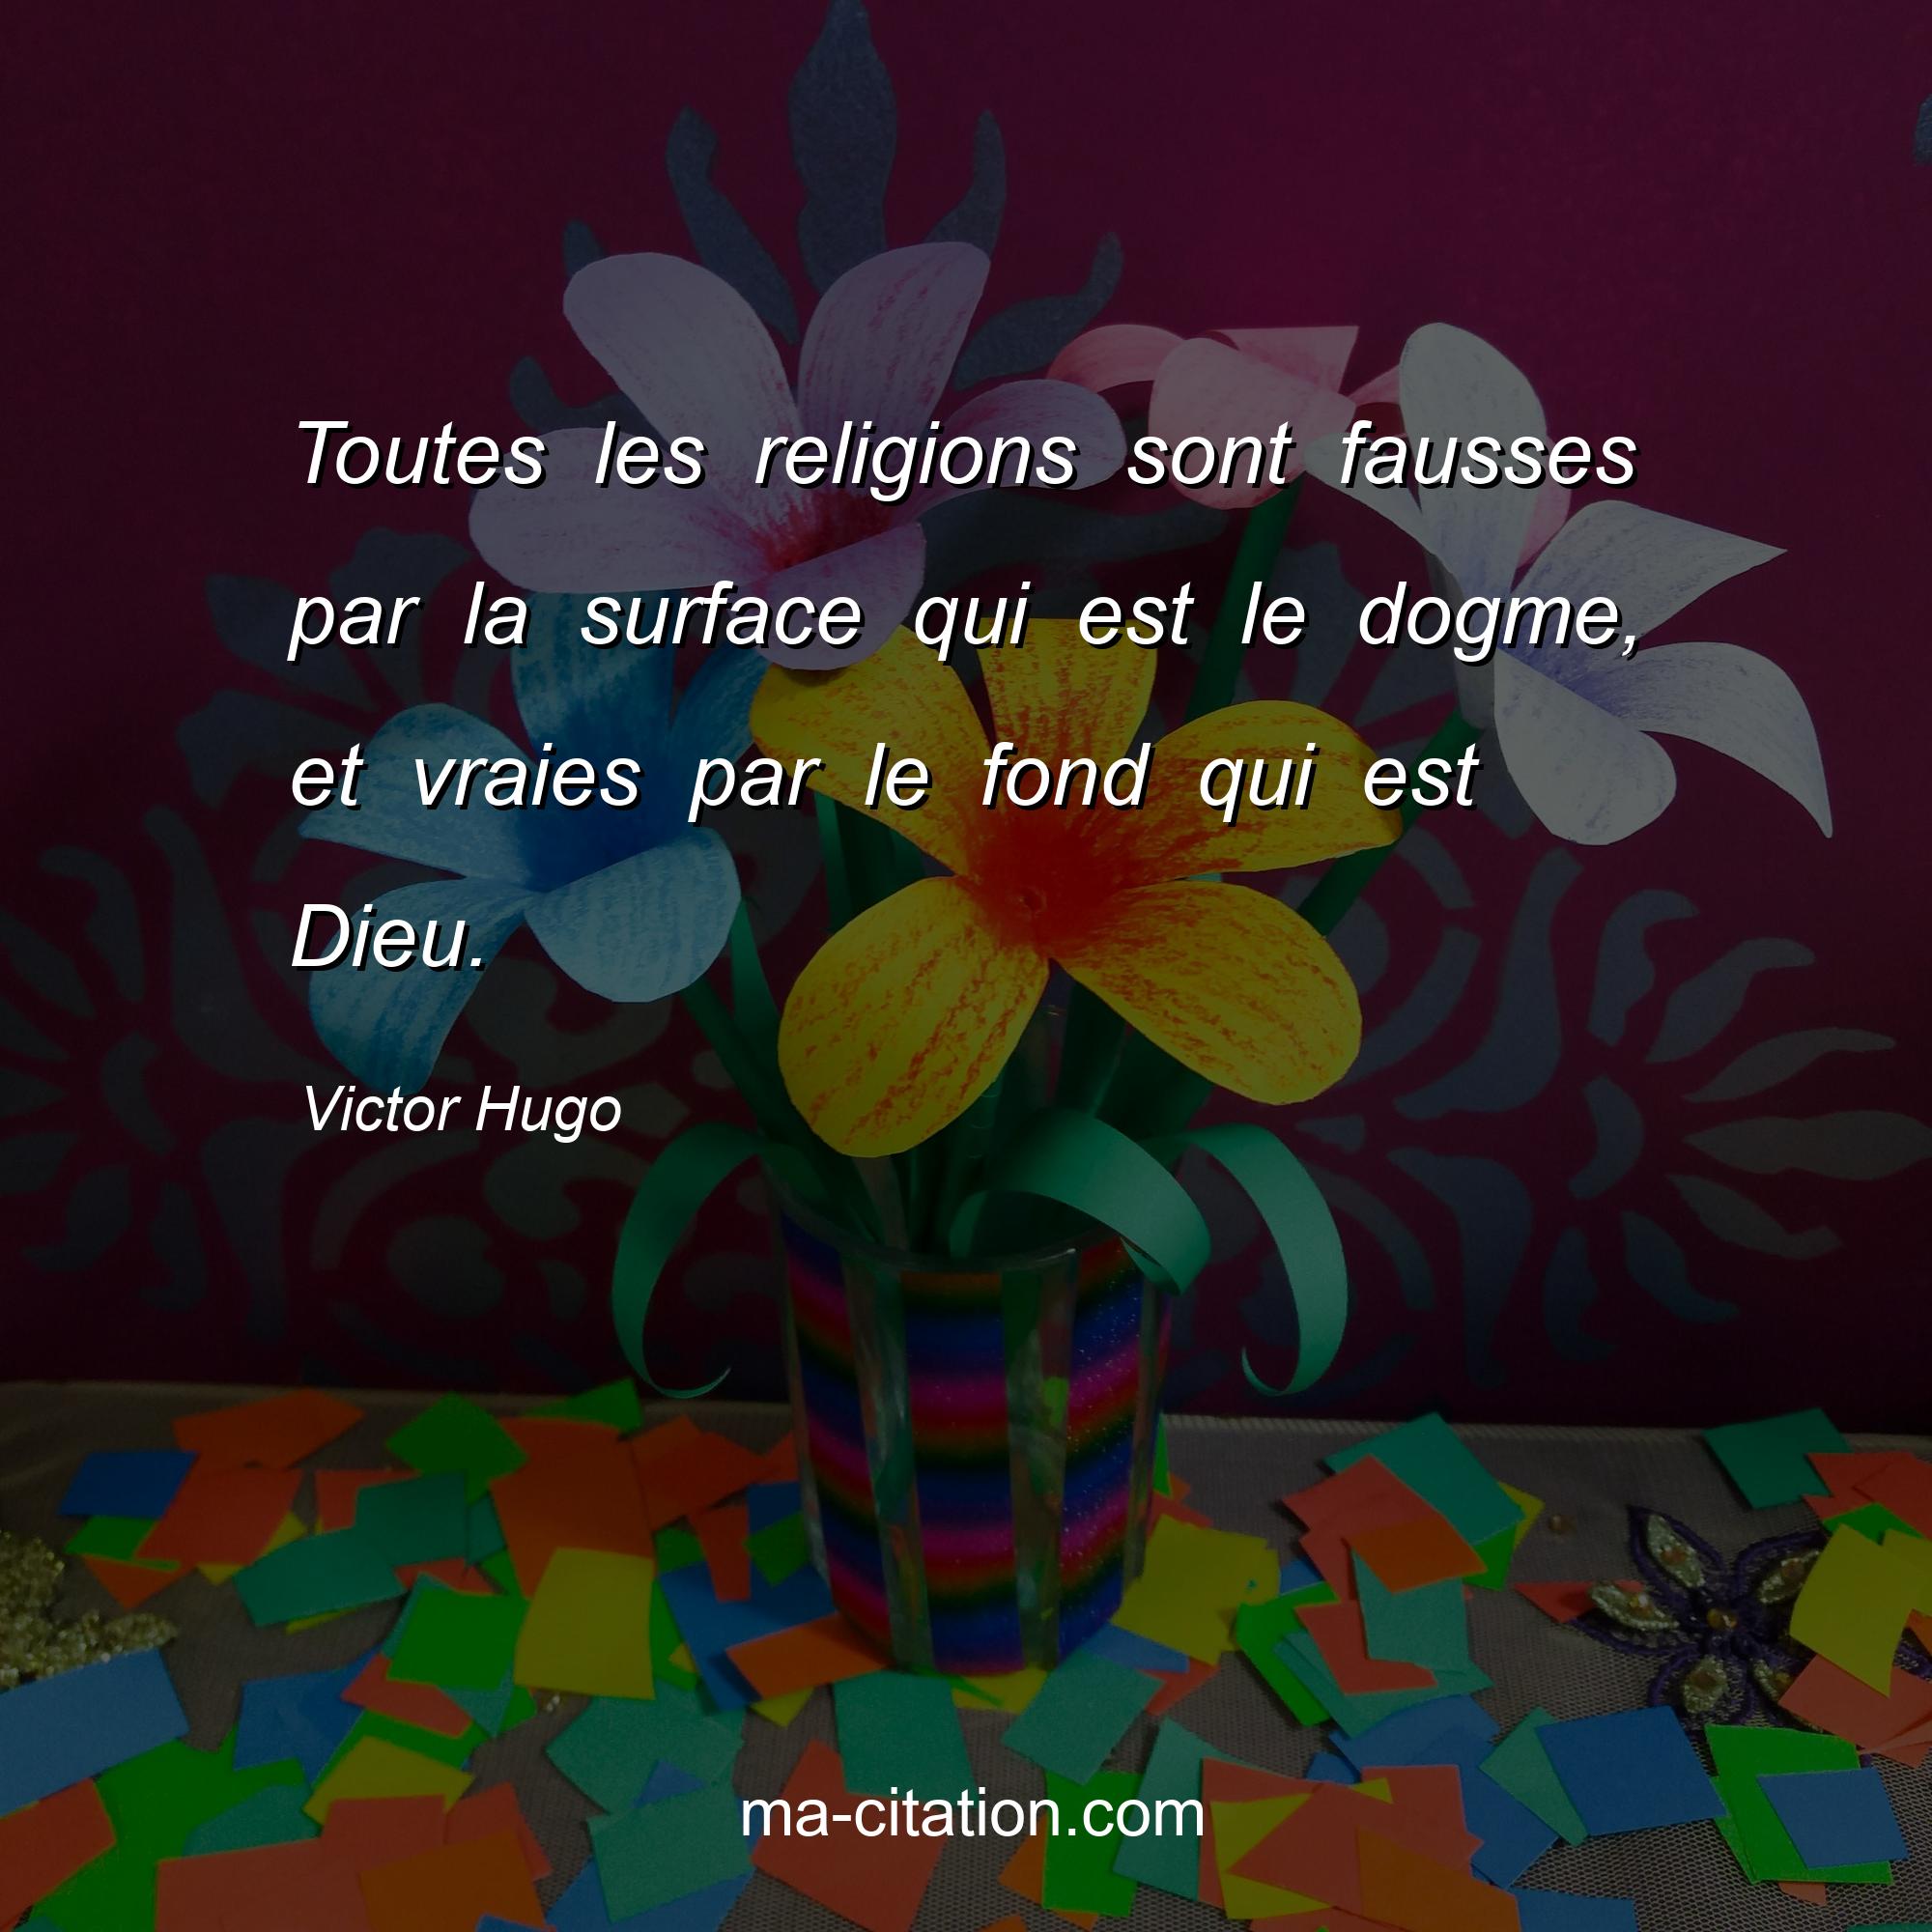 Victor Hugo : Toutes les religions sont fausses par la surface qui est le dogme, et vraies par le fond qui est Dieu.